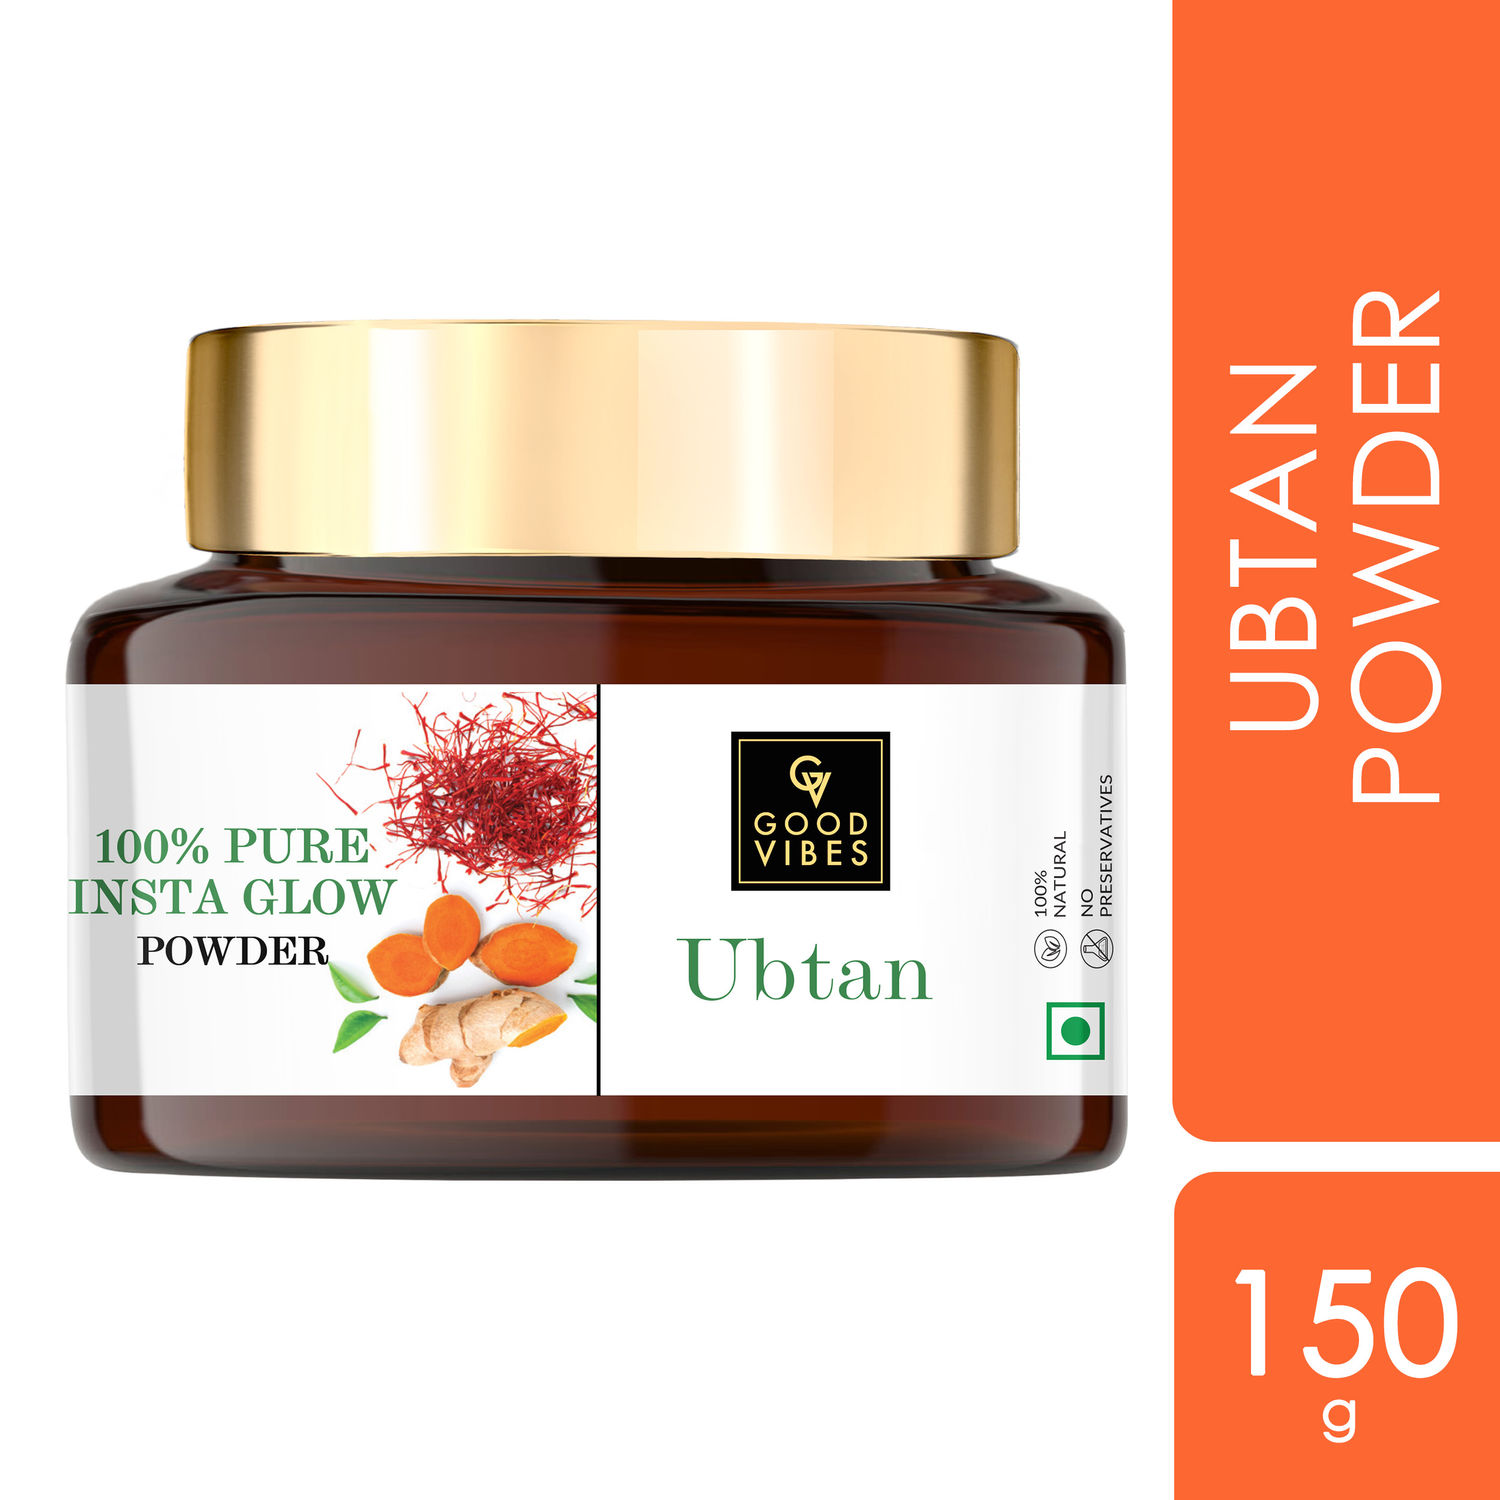 Good Vibes Ubtan Insta Glow Powder | 100% Natural, No Preservatives, No Pesticides, No Parabens, No Silicones, No Sulphates, No Animal Testing (150 g)